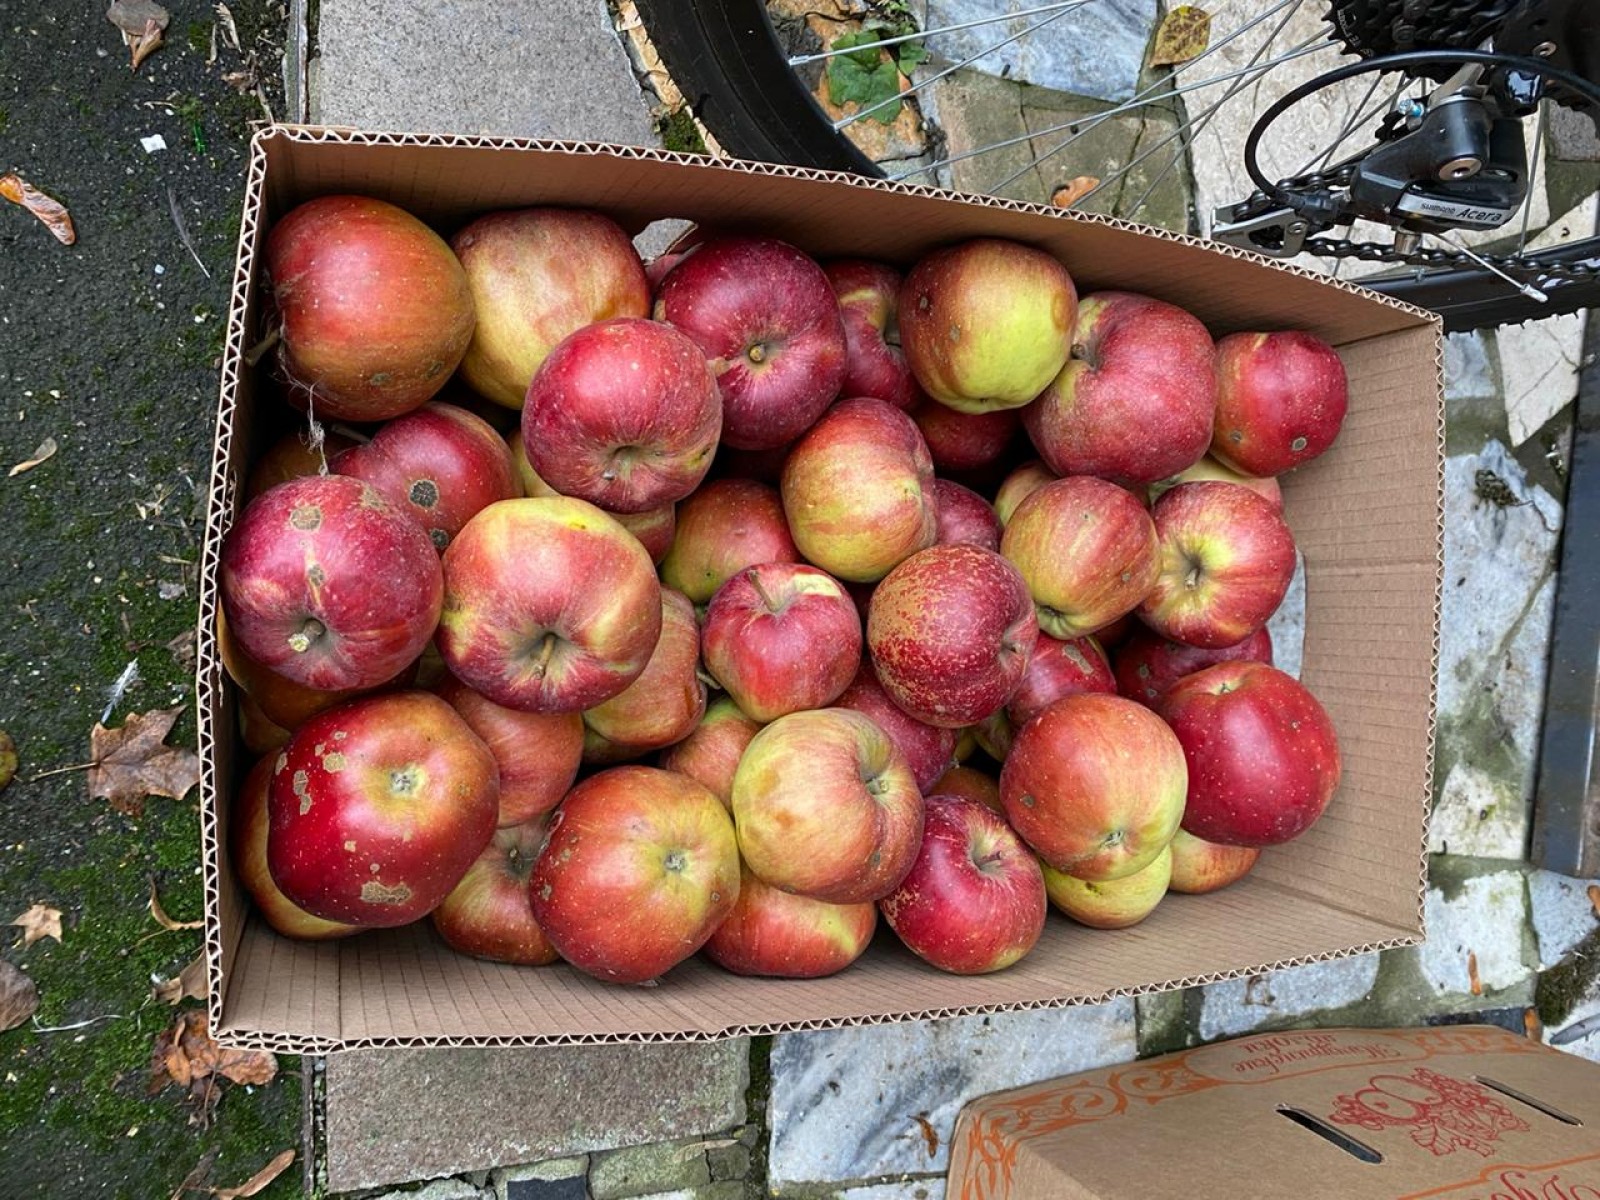 ТГУ им. Г.Р. Державина подарил ГИТИСу 2,5 тонны яблок и картофеля 